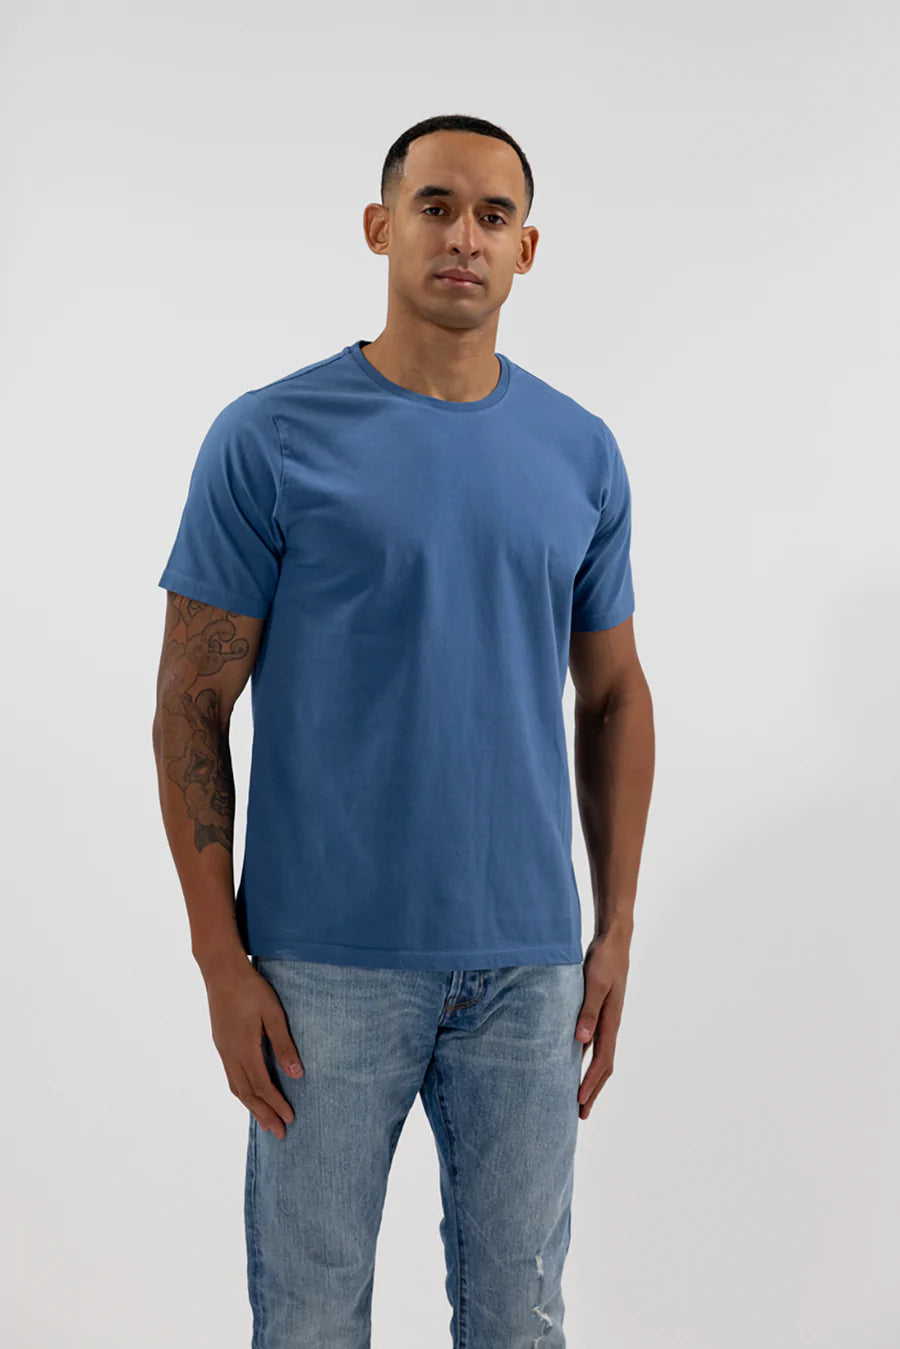 Easy Mondays Crew Neck Cotton T-Shirt-Men&#39;s T-Shirts-Ocean Blue-S-Yaletown-Vancouver-Surrey-Canada